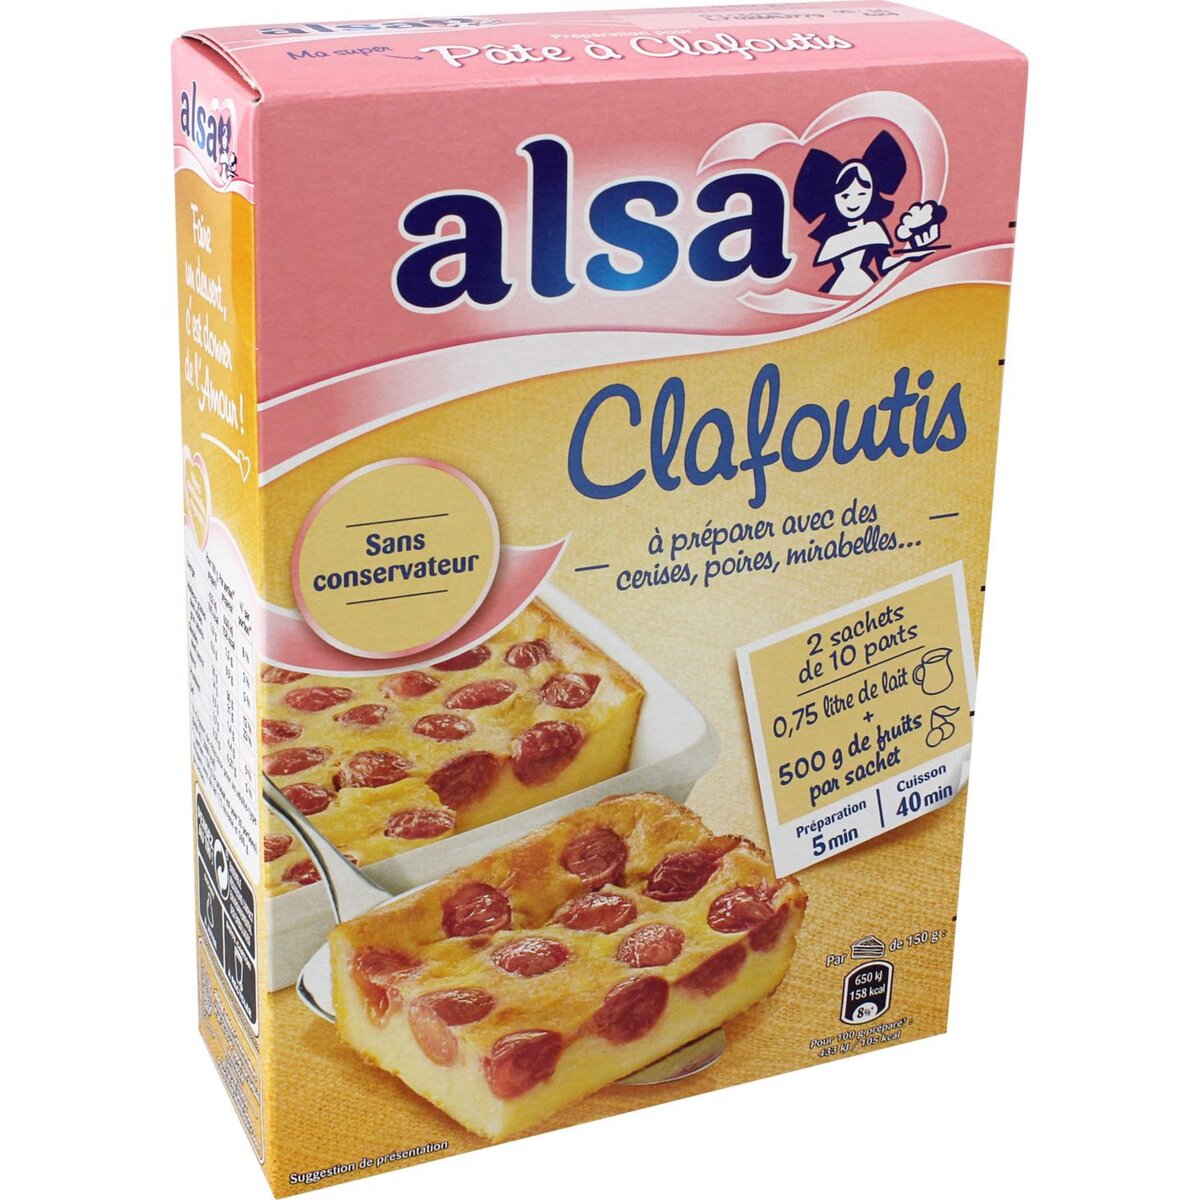 ALSA Préparation pour pâte à clafoutis 2 sachets 440g